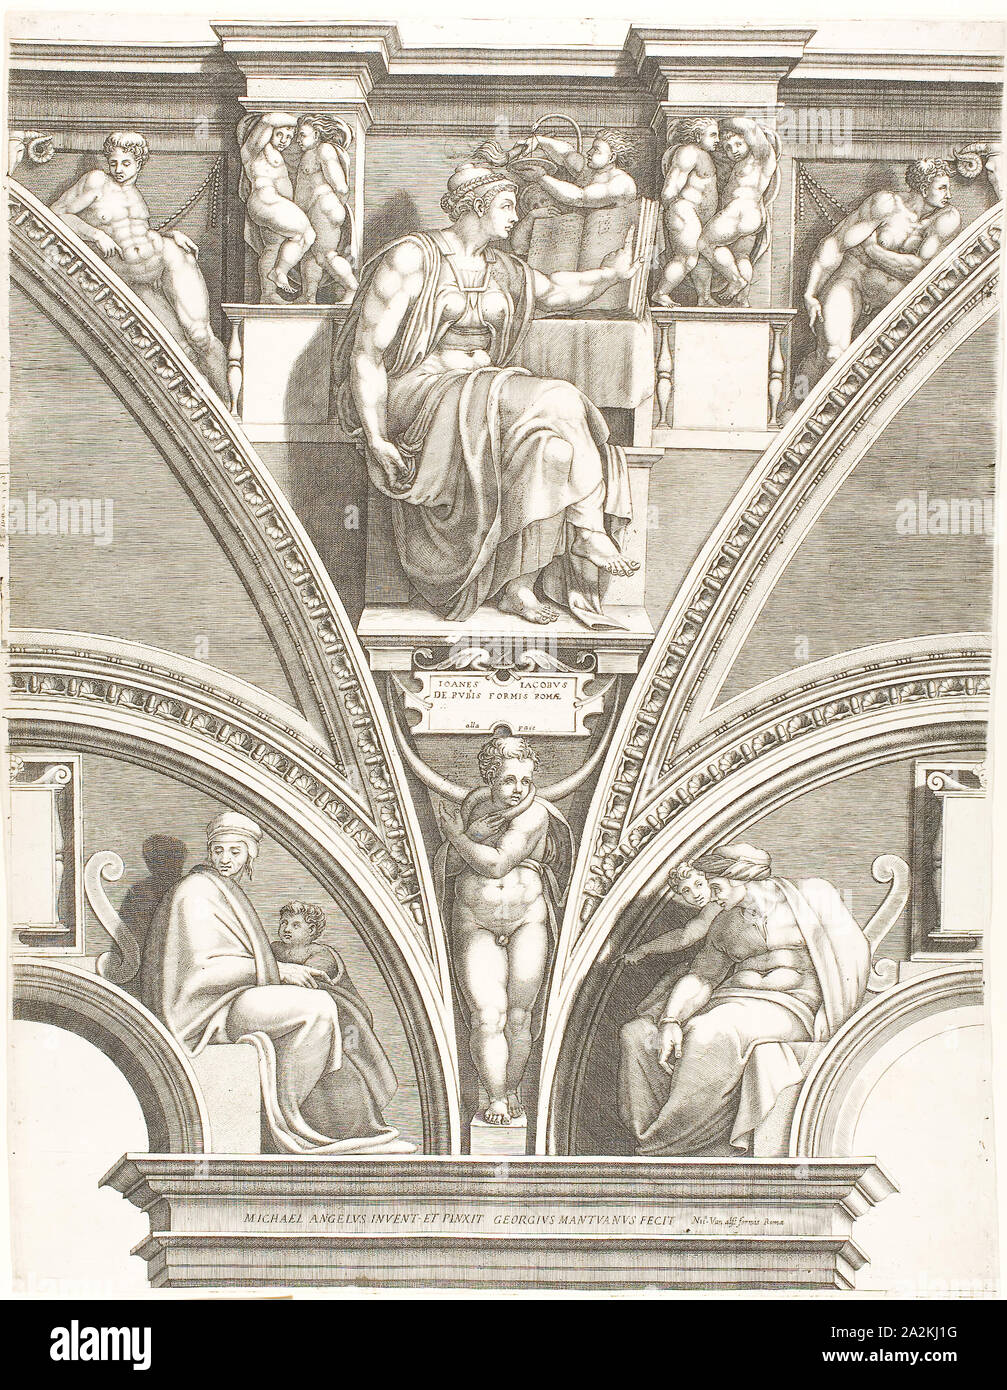 La Sibilla eritrea, c. 1570, Giorgio Ghisi (Italiano, 1520-1582), dopo Michelangelo Buonarroti (Italiano, 1475-1564), l'Italia, incisione su avorio carta vergata, 572 x 436 mm Foto Stock